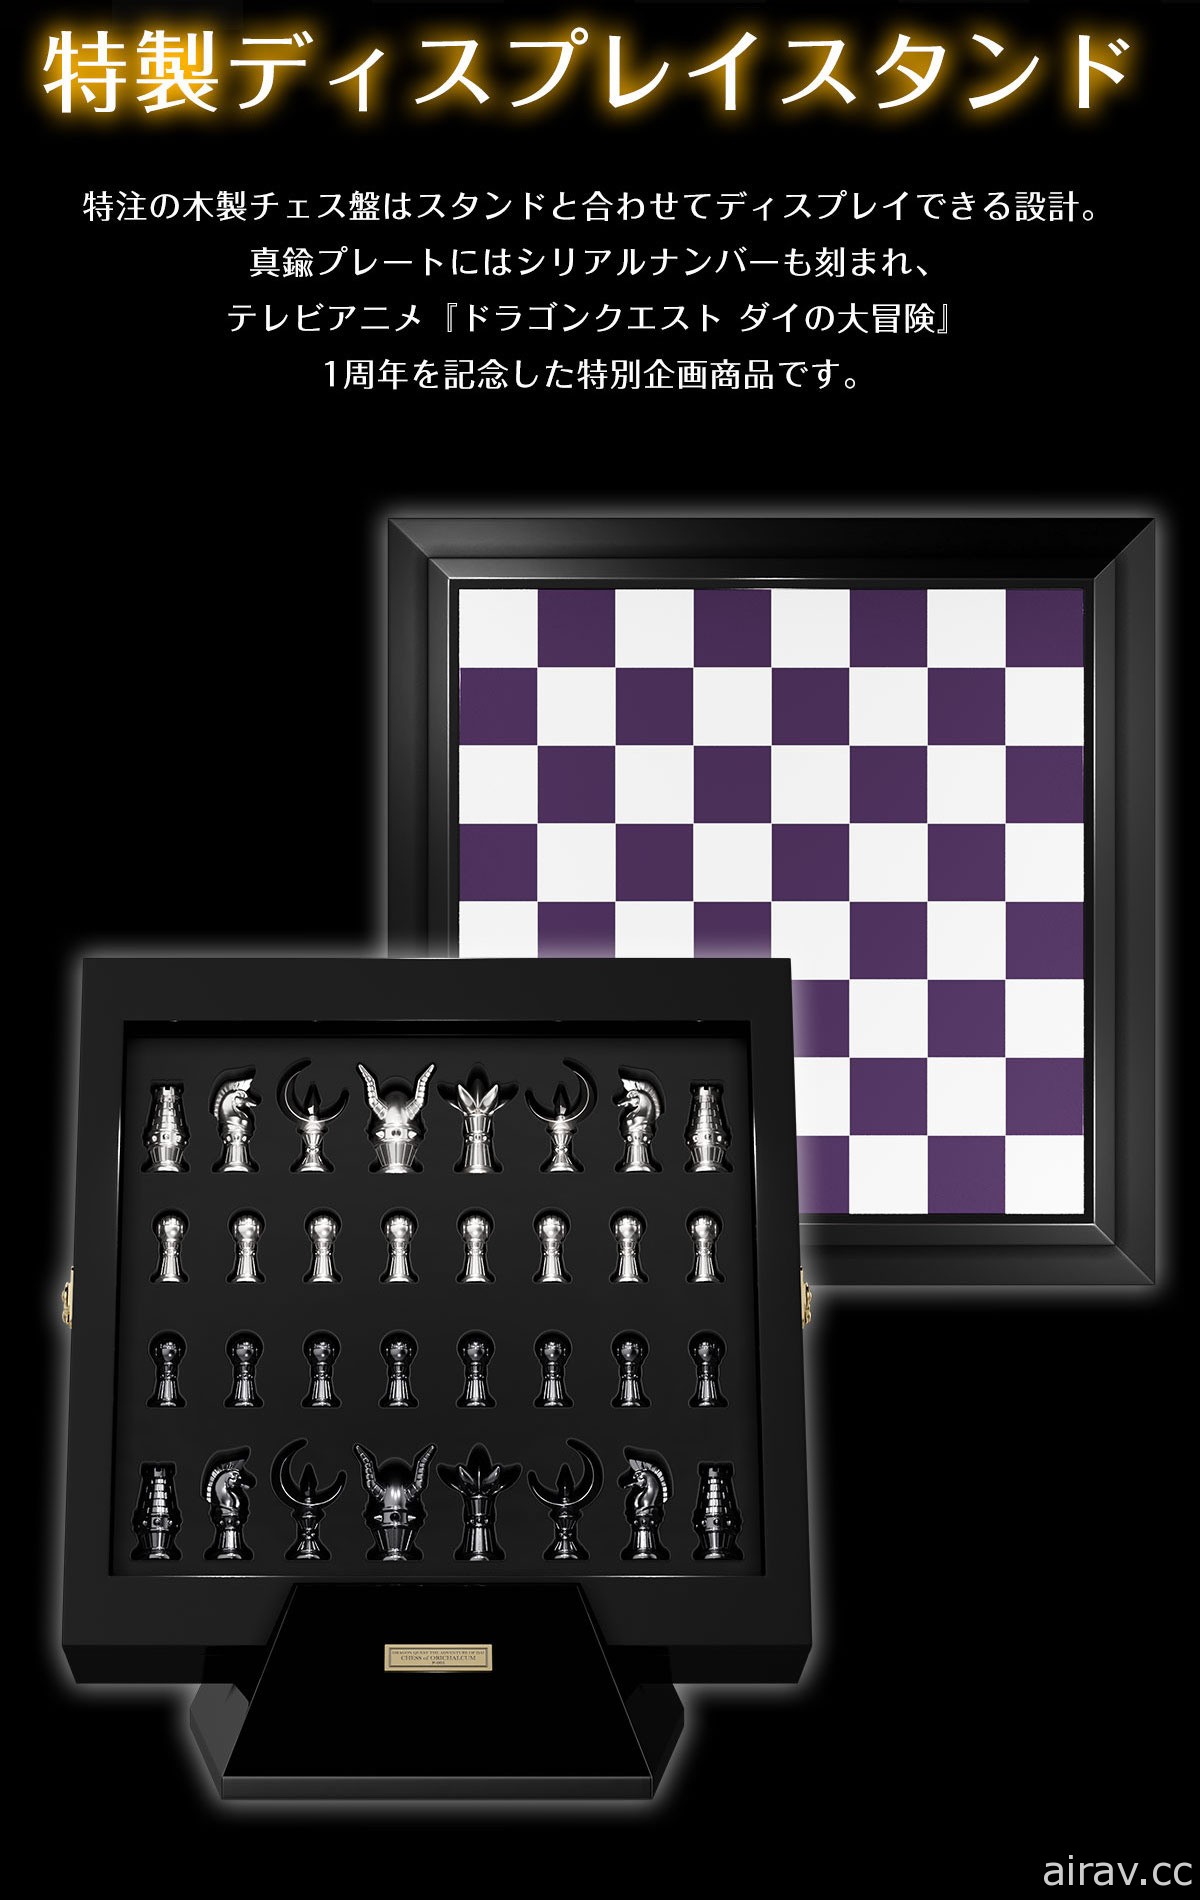 《勇者斗恶龙 达伊的大冒险》推出哈德拉亲卫骑团银制西洋棋组 要价 300 万日圆